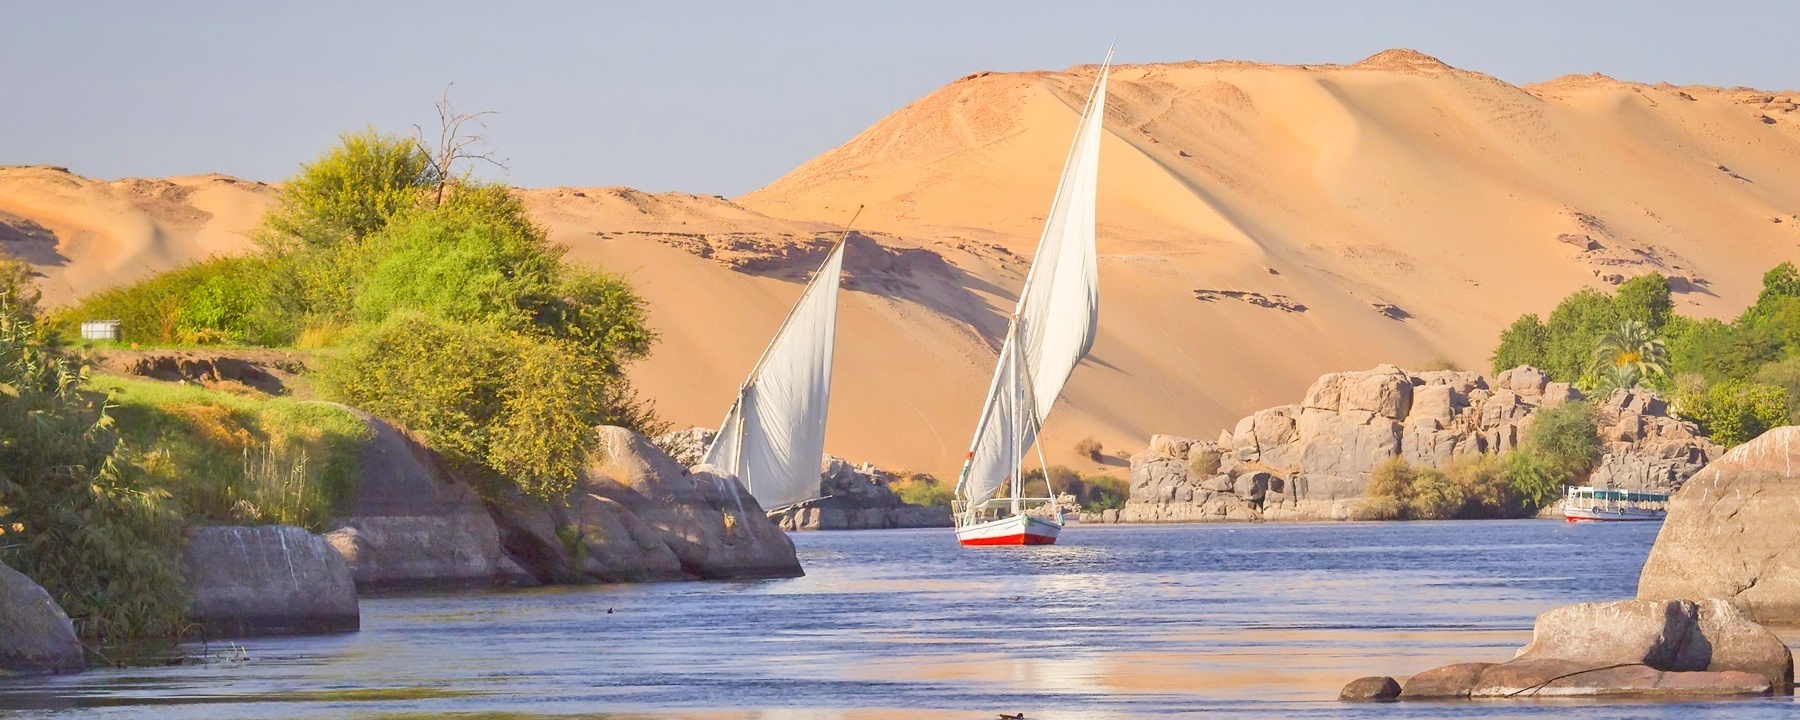 Crucero de 4 días por el Nilo desde Marsa Alam